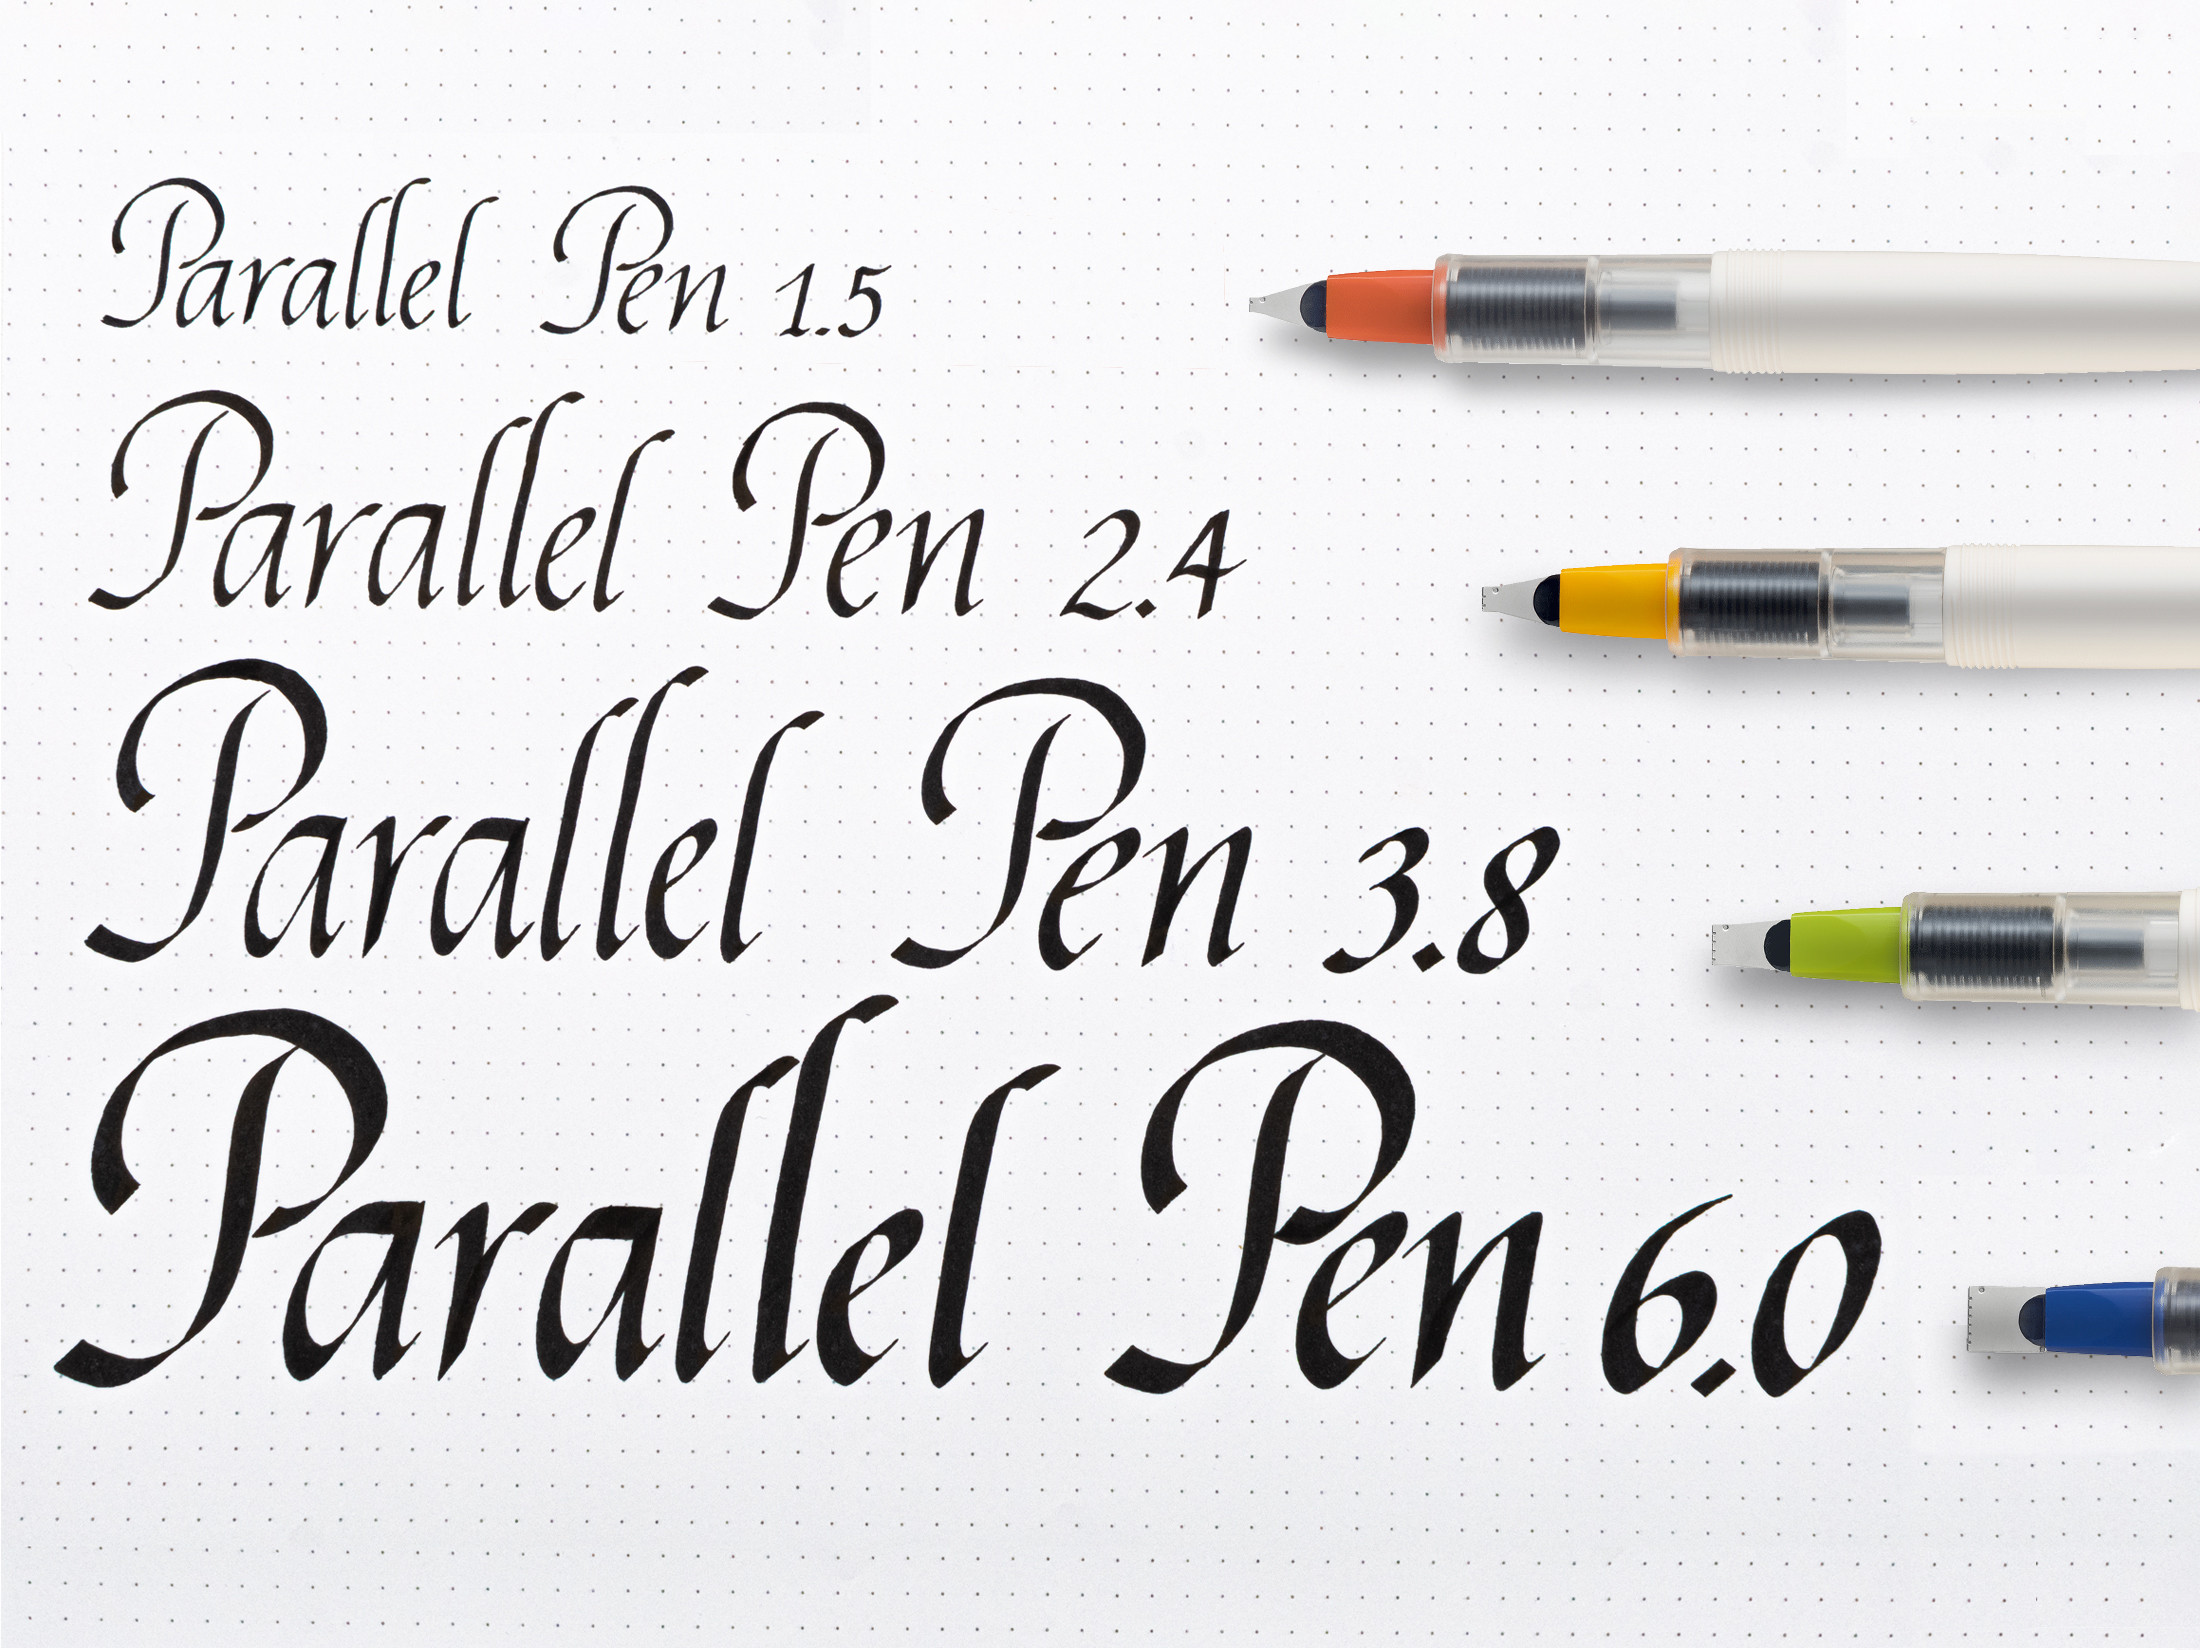 Parallel Pen 1.5